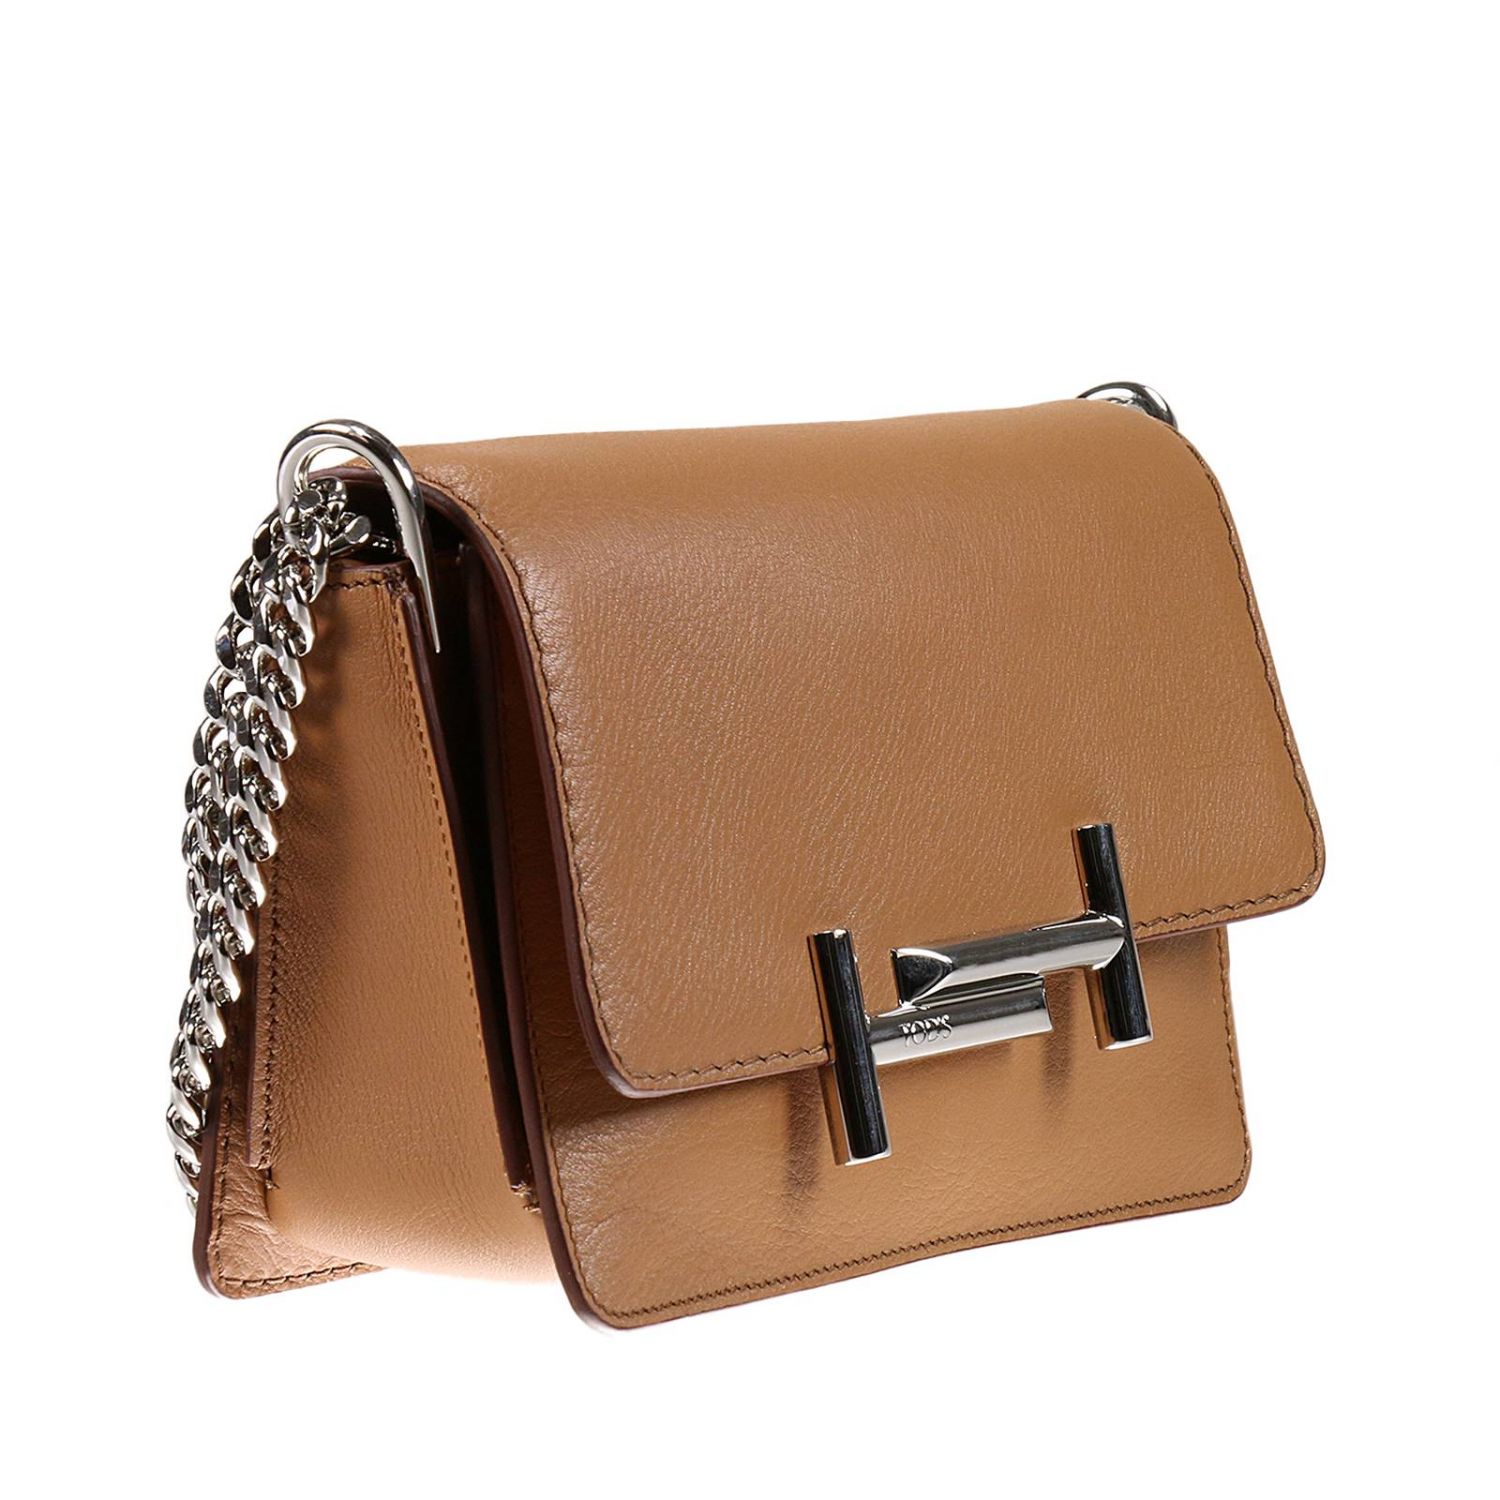 TODS: Handbag woman Tod's | Shoulder Bag Tods Women Leather | Shoulder ...